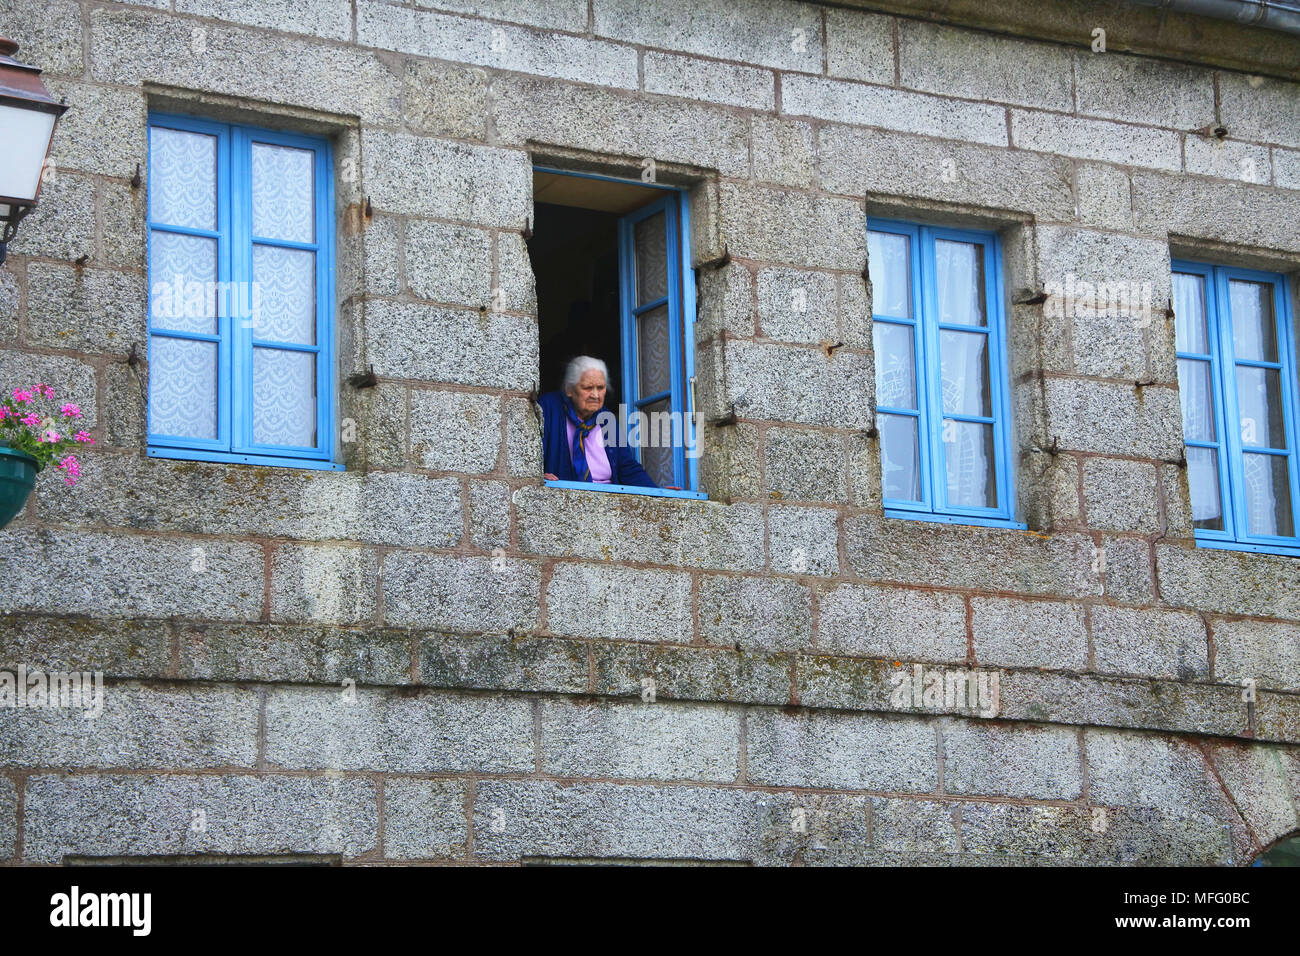 Vieille dame à la fenêtre de sortie, Huelgoat, Bretagne, France - John Gollop Banque D'Images